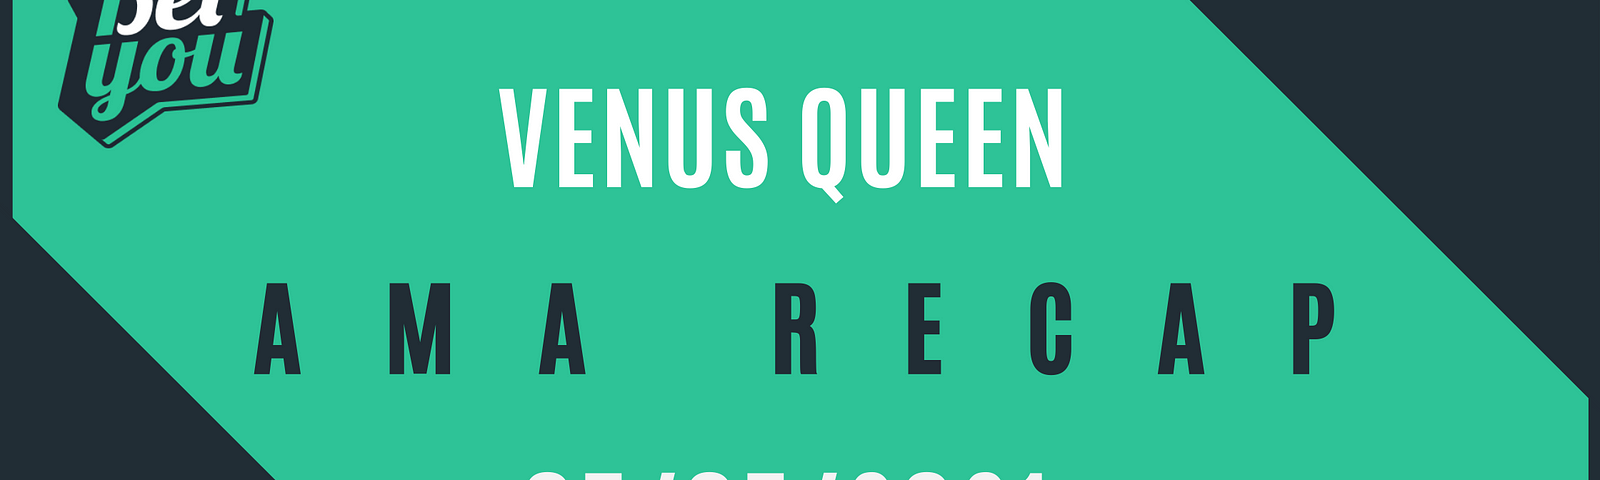 Venus Queen AMA recap